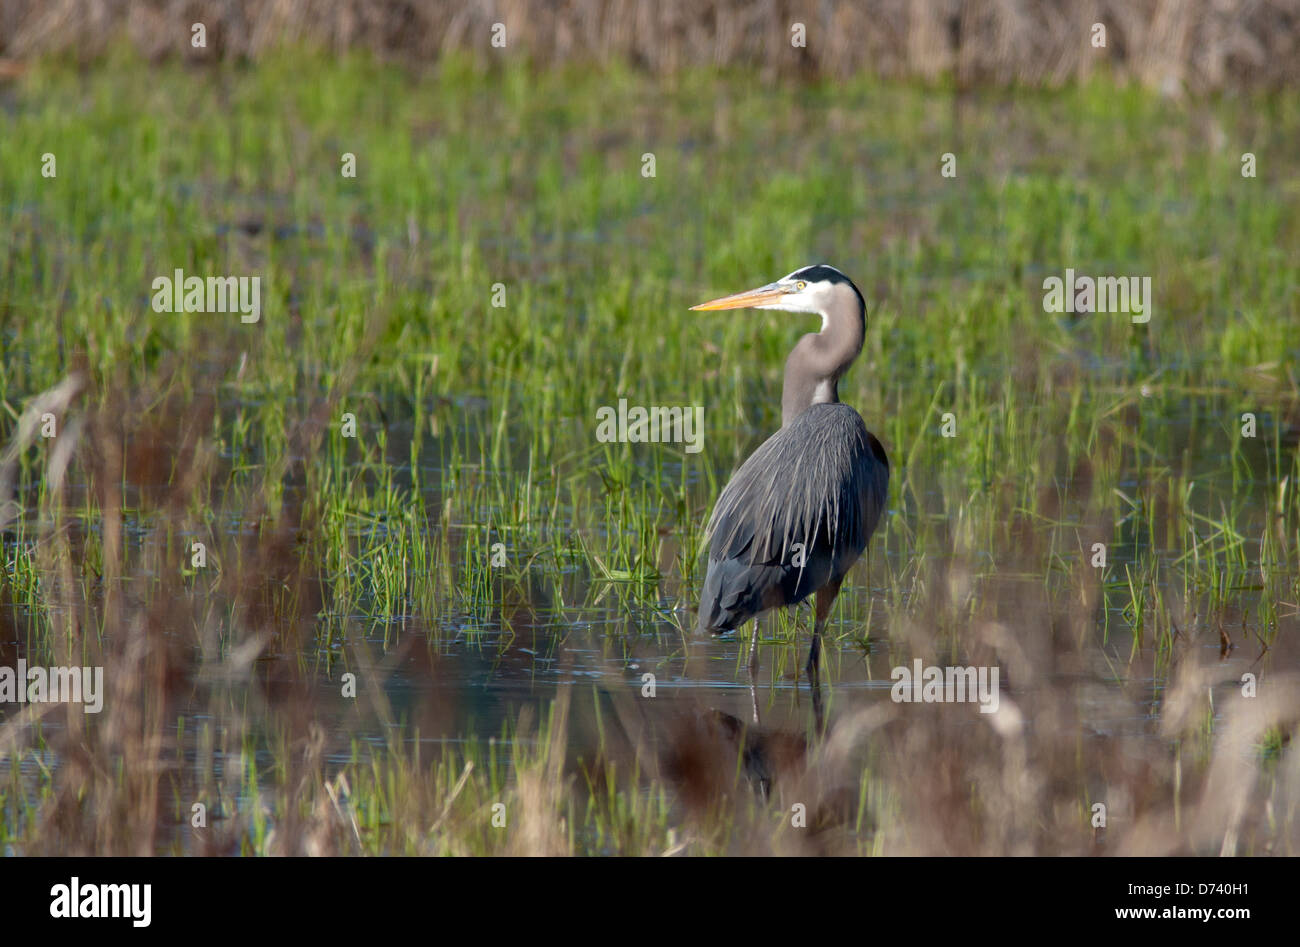 Heron in the wetlands. Stock Photo